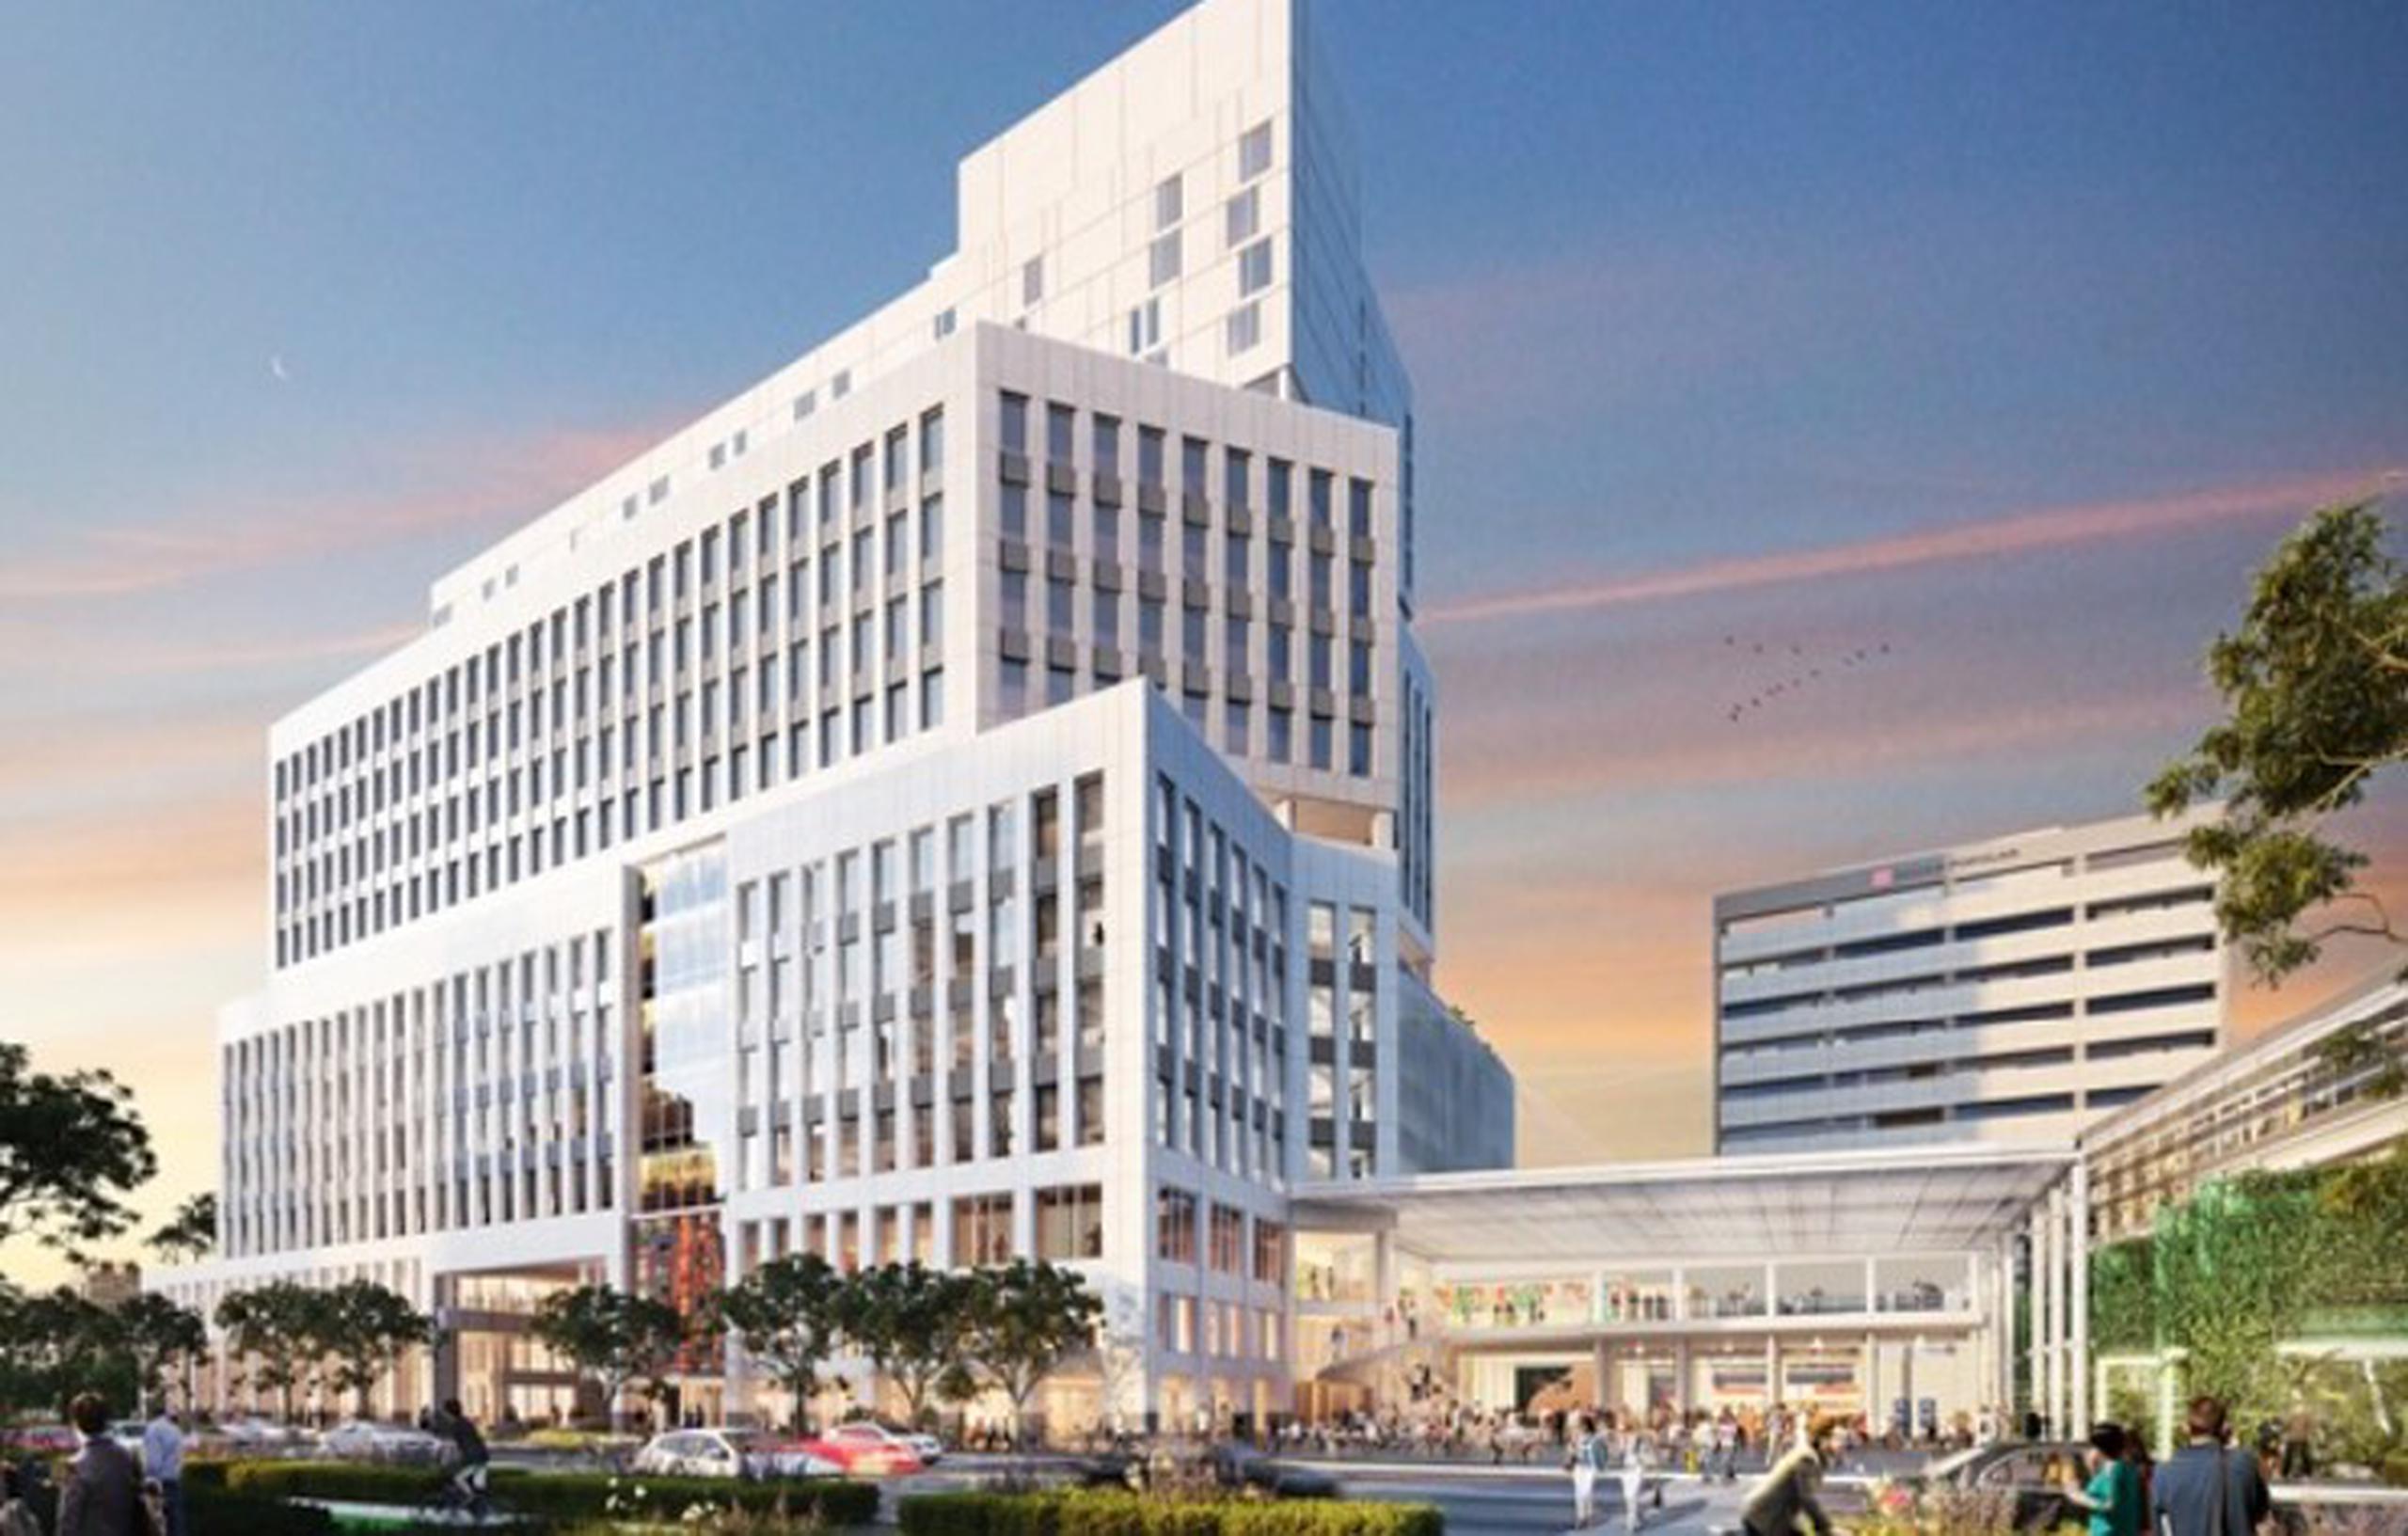 Ilustración de cómo quedará el proyecto que contará con 16 pisos, 250,000 pies cuadrados para oficinas administrativas y una plaza central.